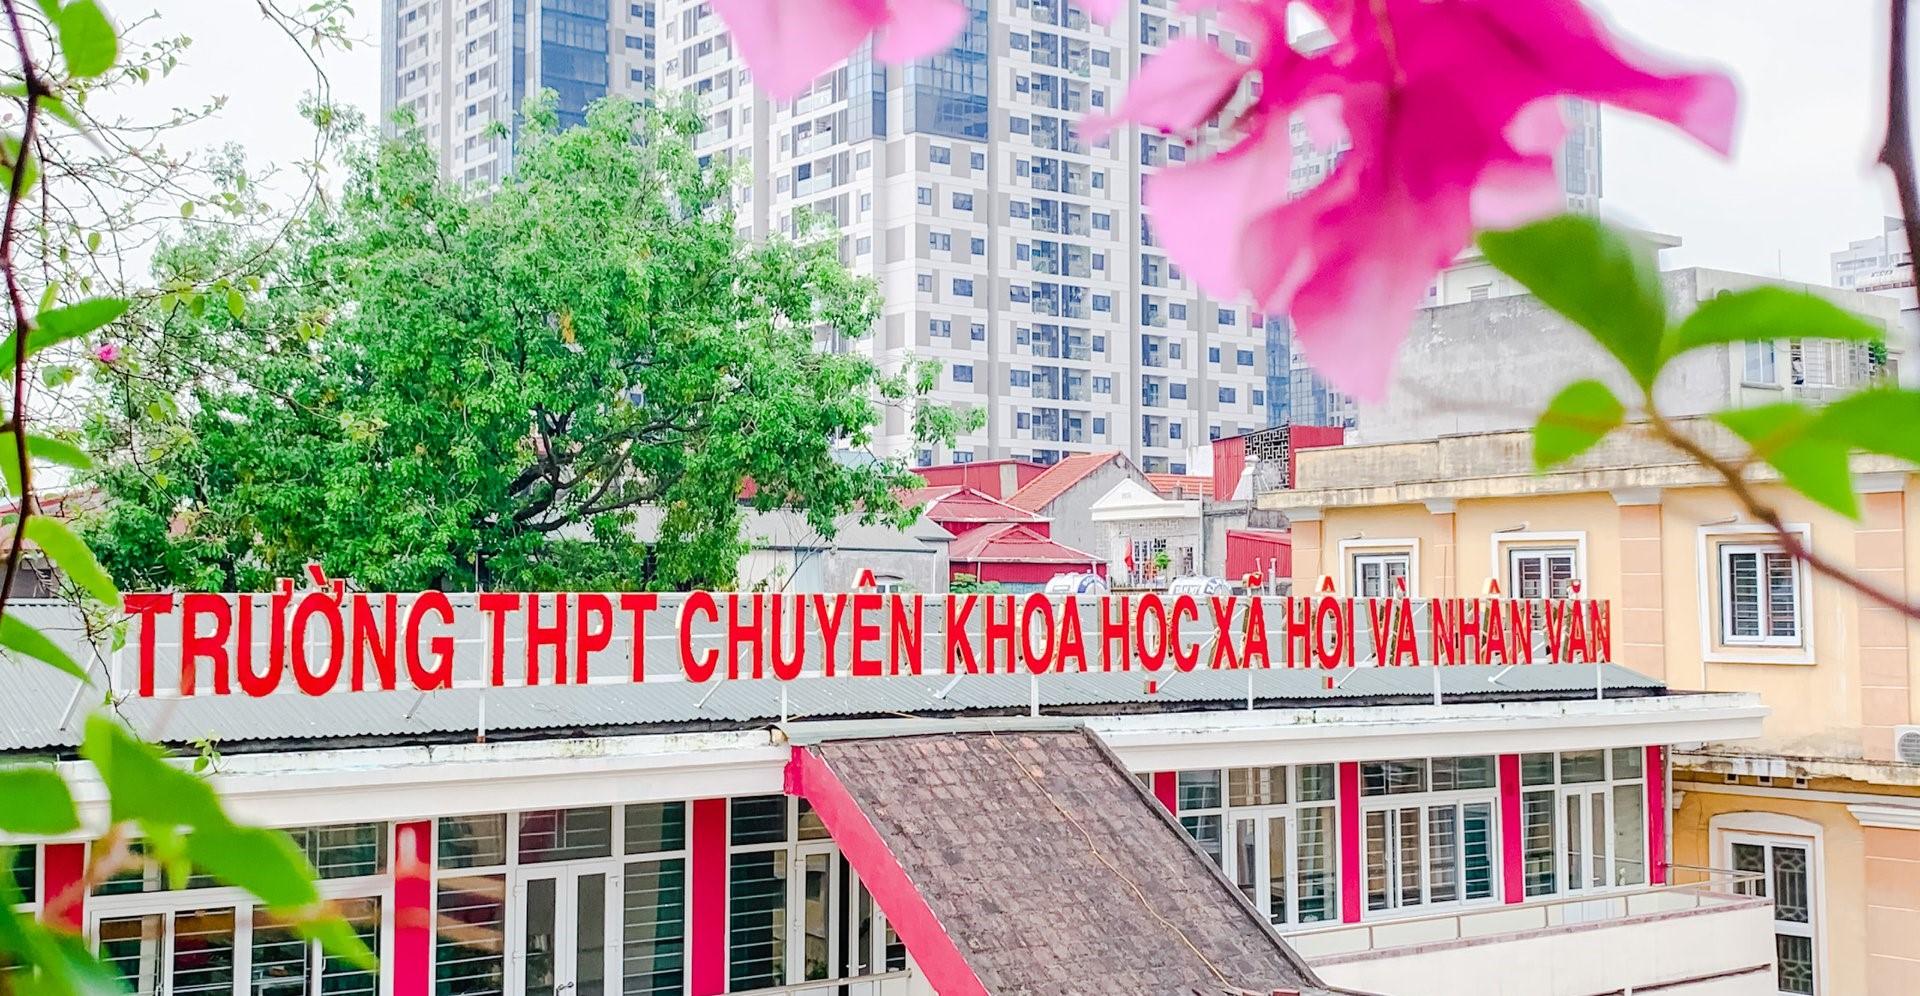 Trường THPT Chuyên Khoa học Xã hội và Nhân văn tăng chỉ tiêu vào lớp 10 - Giáo dục Việt Nam